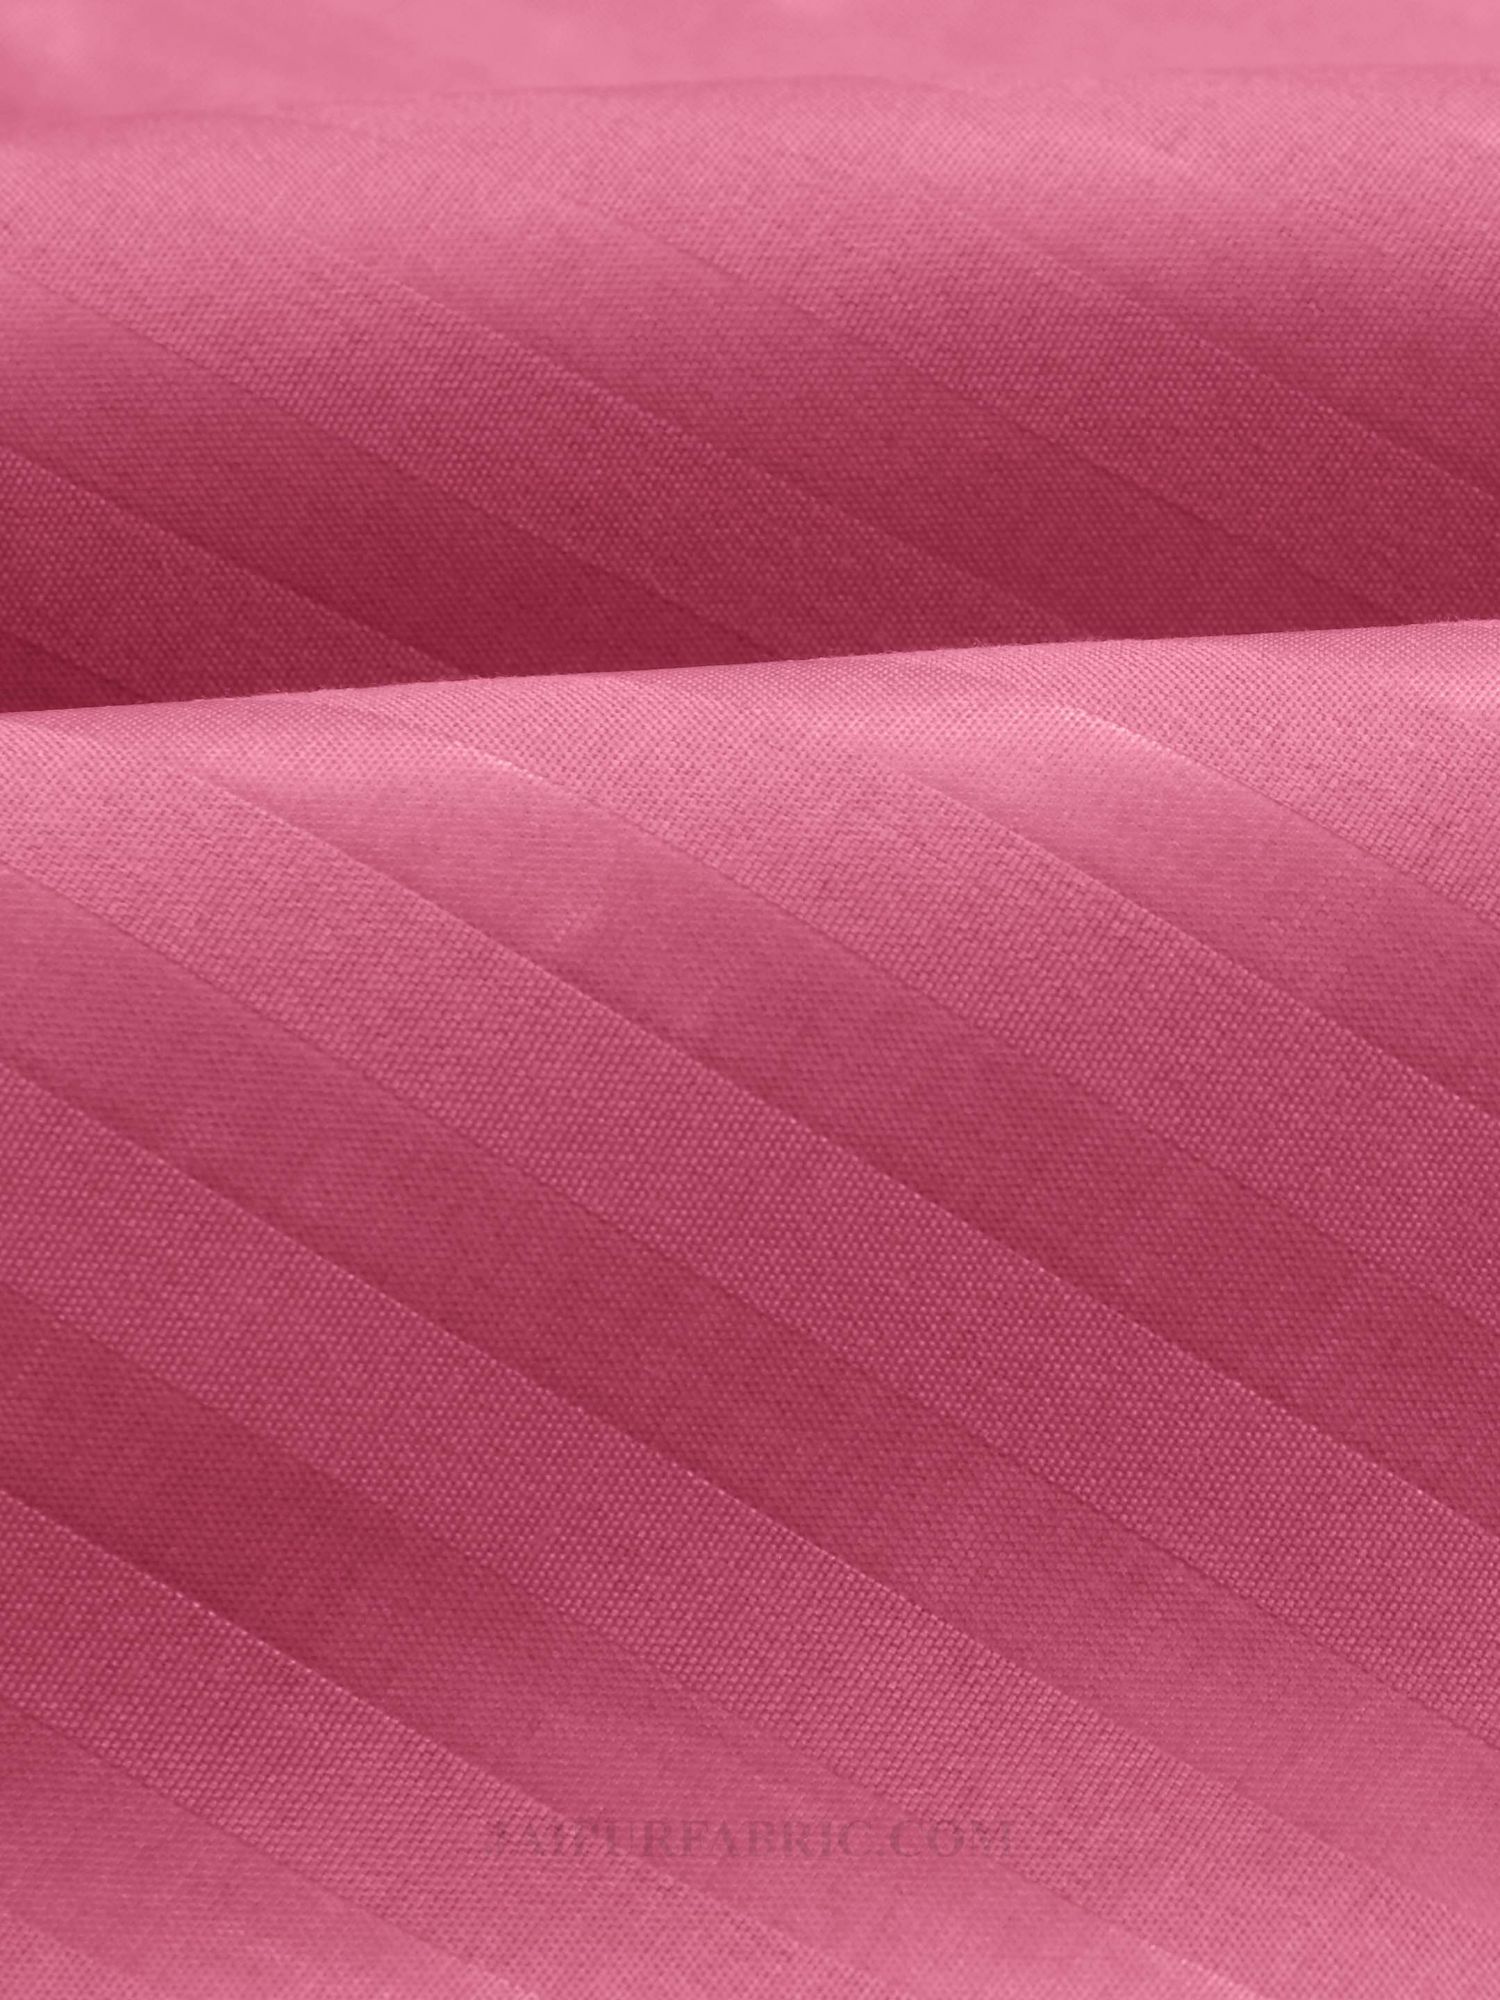 Rose Pink Satin Stripes Single BedSheet